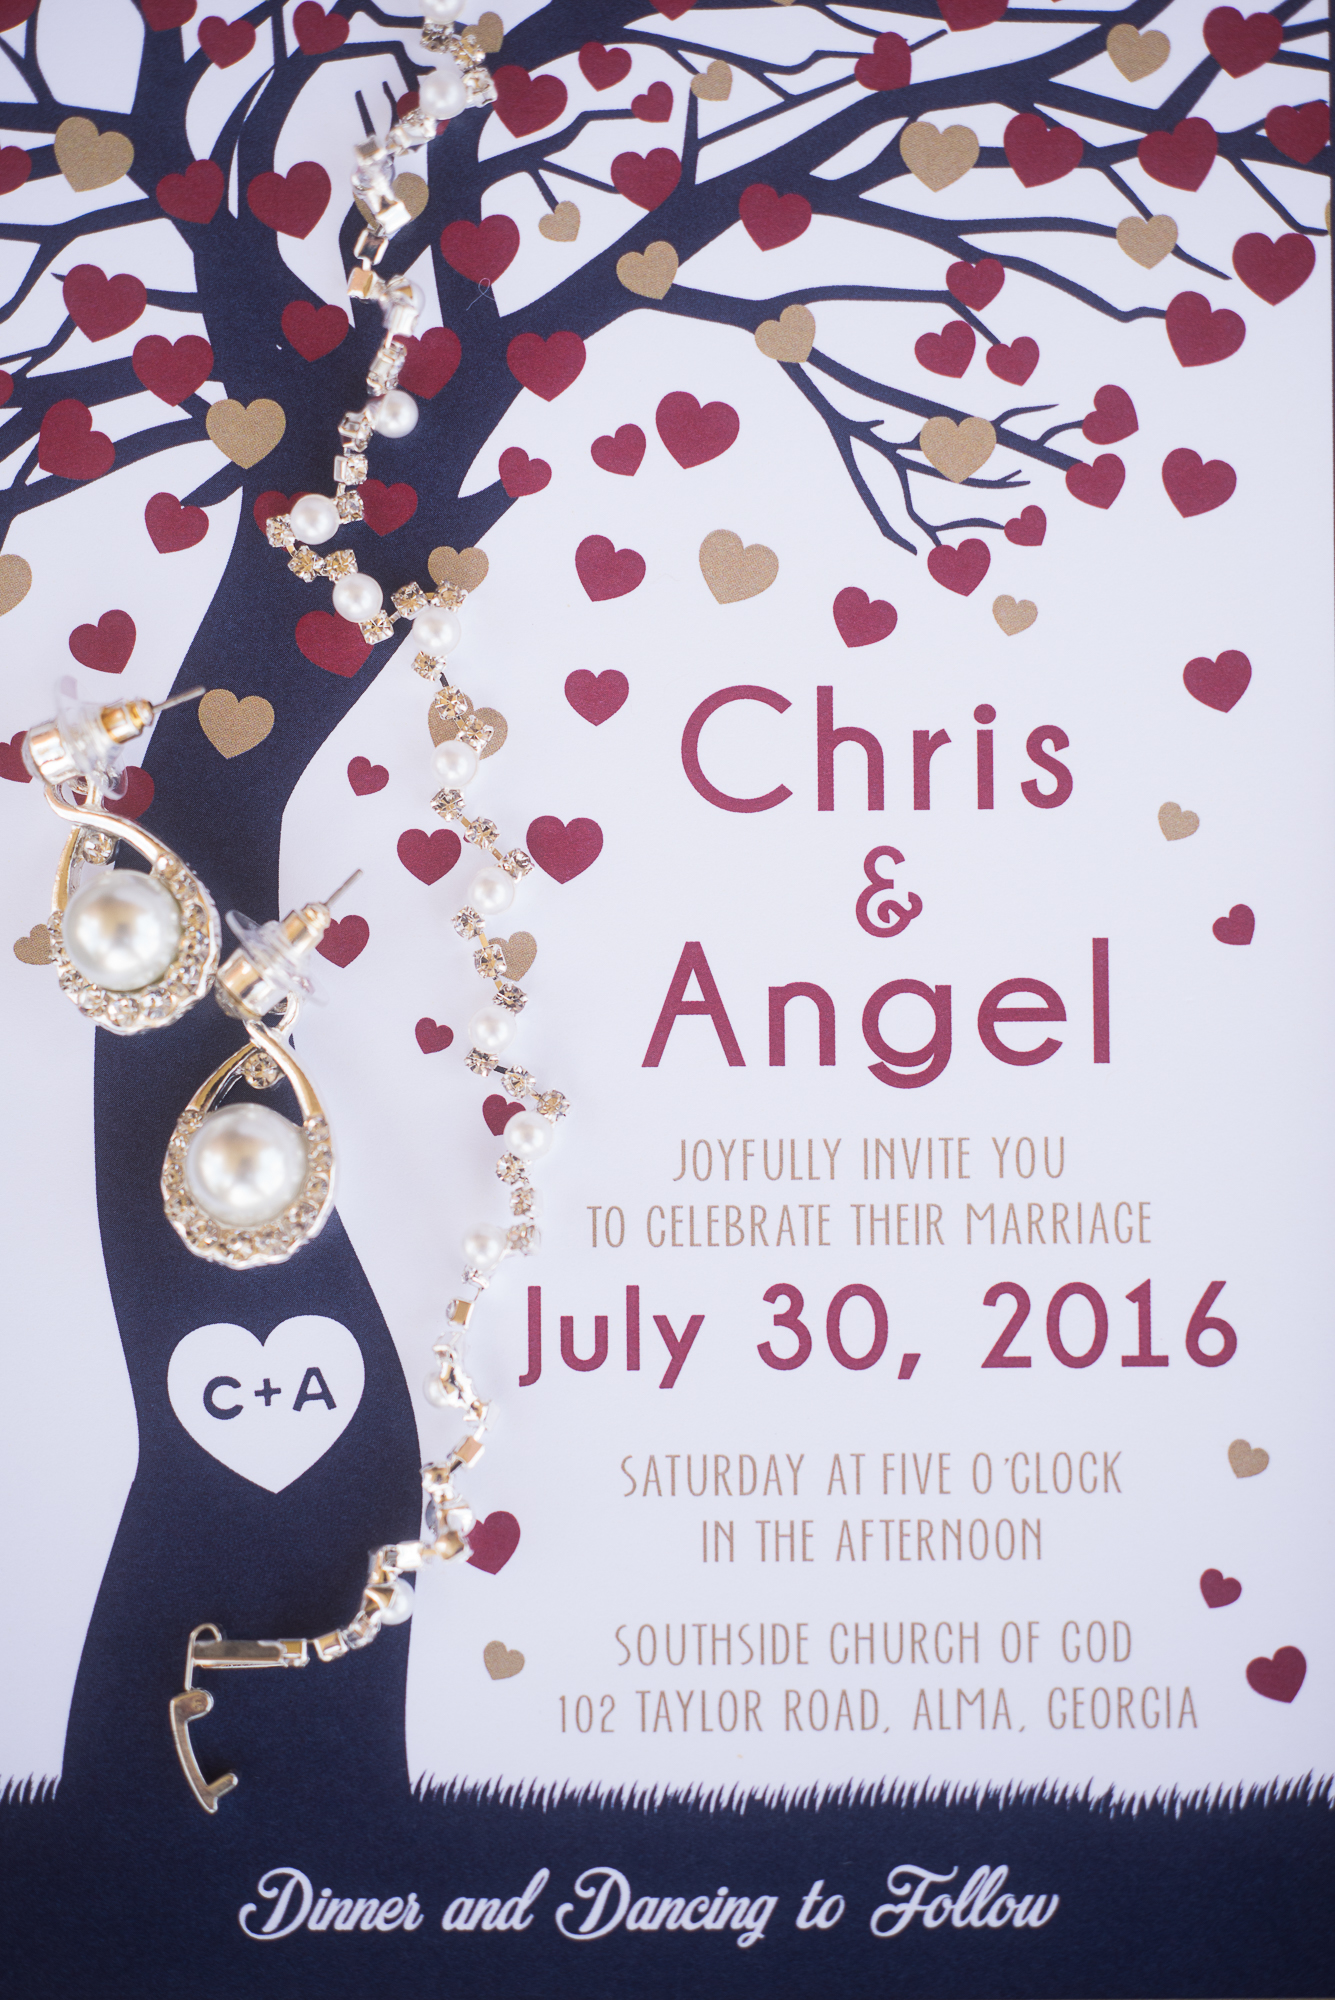 Angel and Chris-13